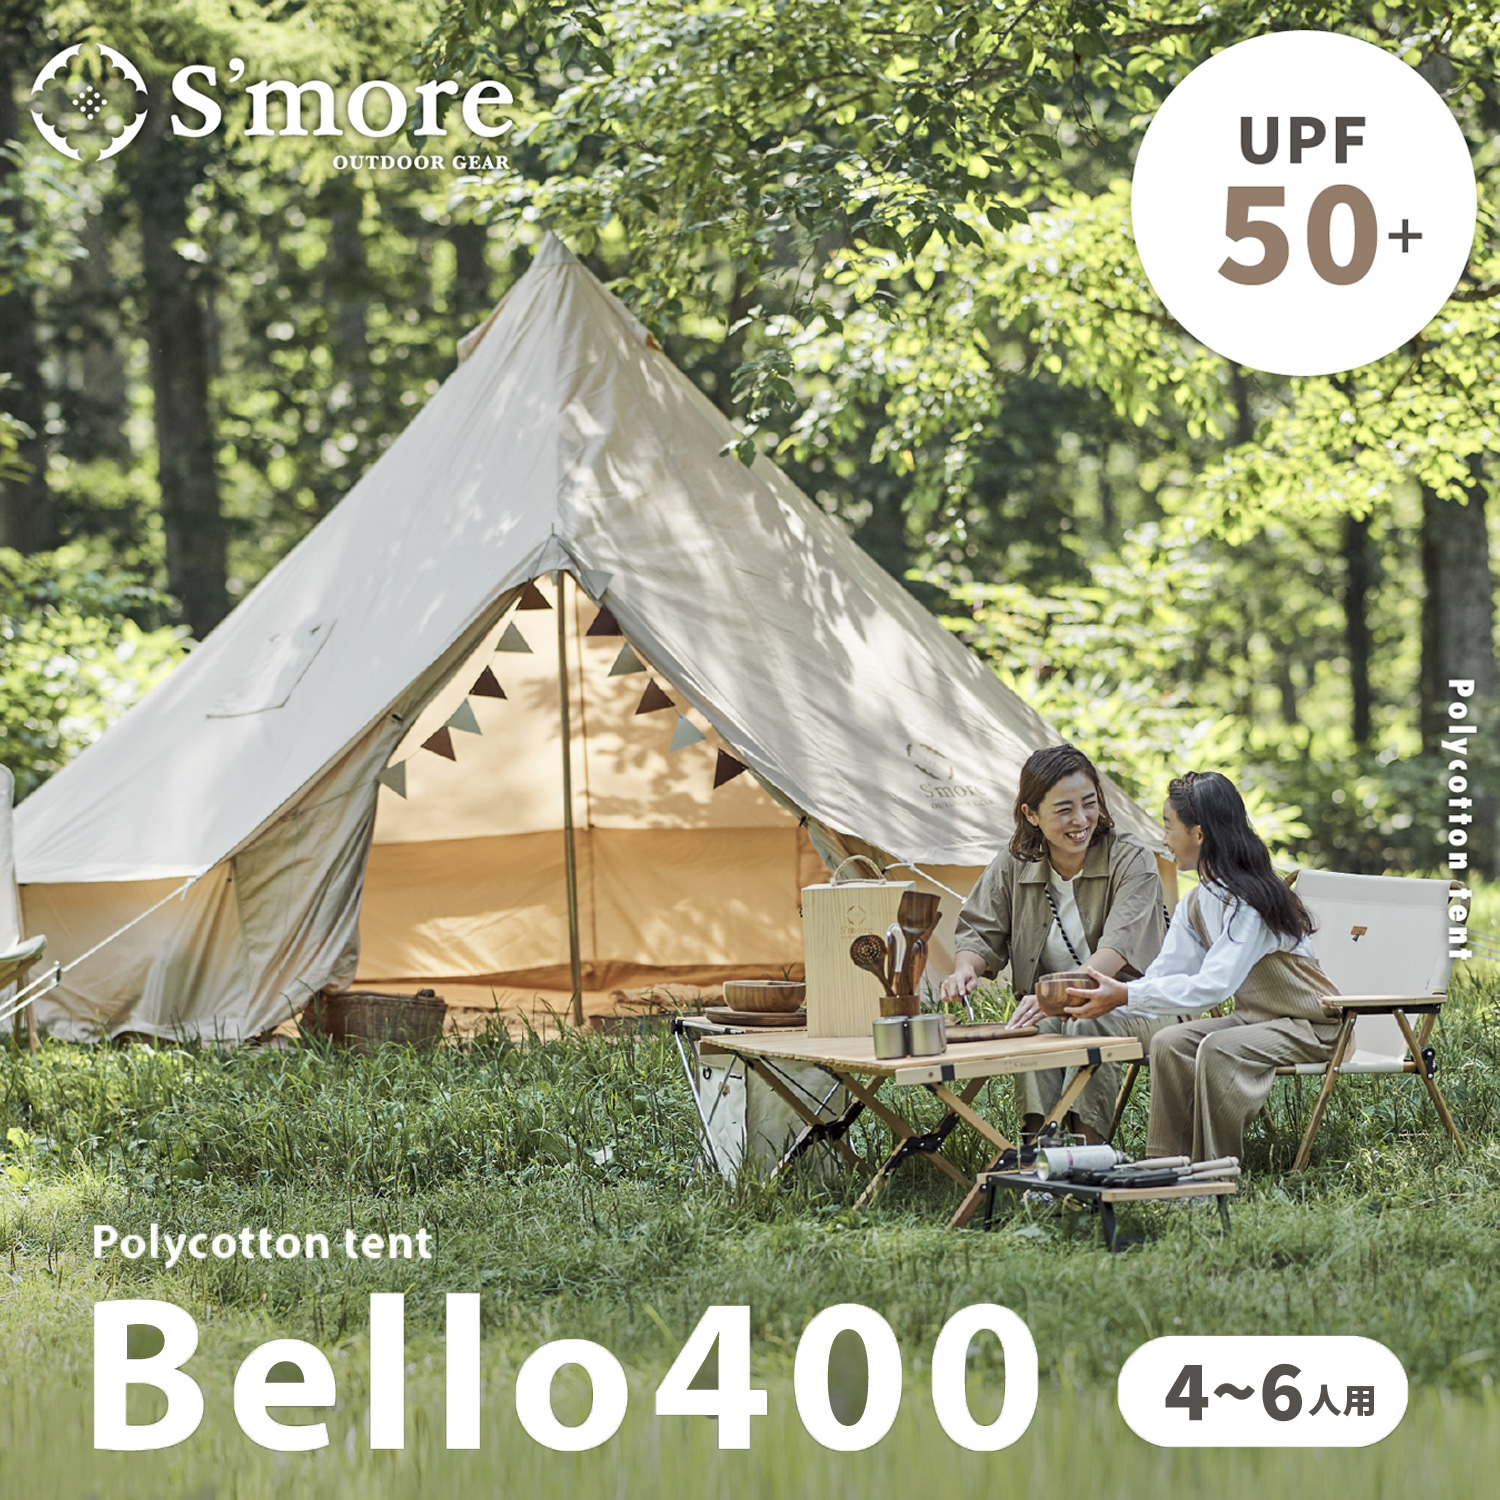  ベル型テント テント ベル型 スモア bello400 ポリコットン TCテント ファミリーテント 5〜6人用 キャンプ テント おしゃれ  撥水 UVカット アウトドア 通気 吸湿  ワンポール